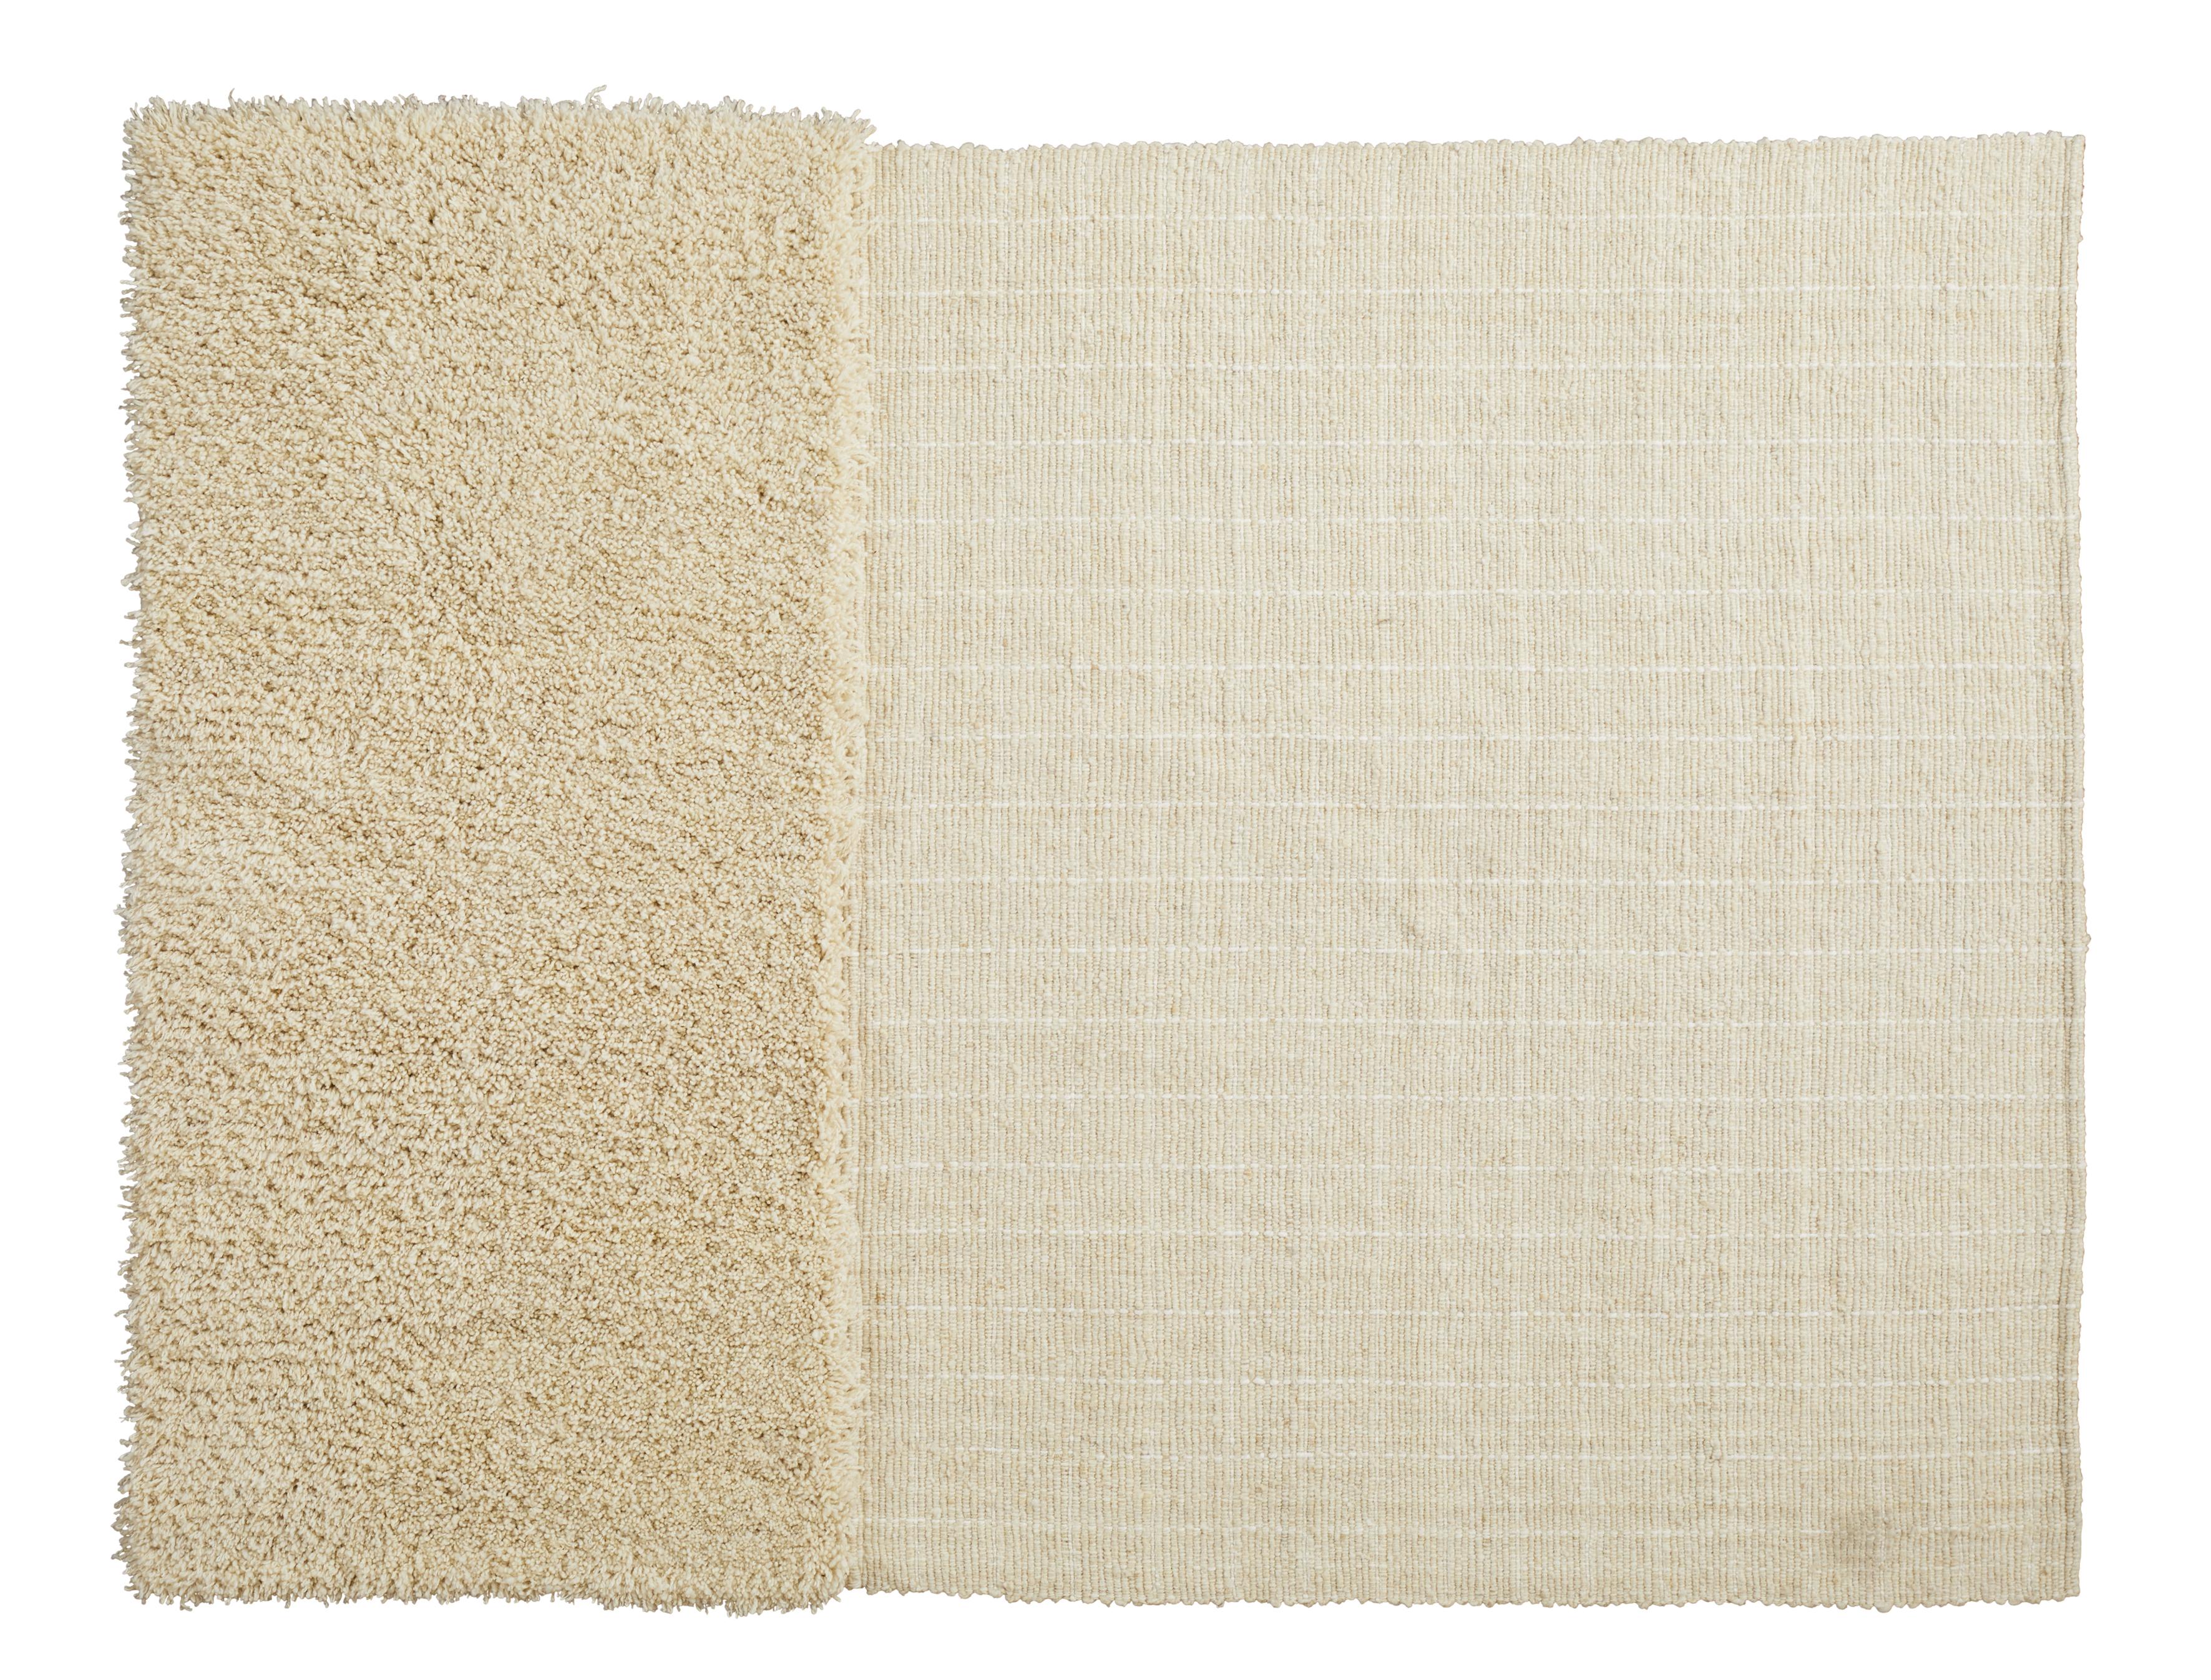 Großer Subas-Moton-Teppich von Sebastian Herkner
MATERIALIEN: 100% natürliche Schurwolle. 
Technik: Natürlich gefärbte Fasern. Handgewebt in Kolumbien.
Abmessungen: B 310 x L 420 cm 
Erhältlich in den Farben: karo, linea 1, linea 2, moton,